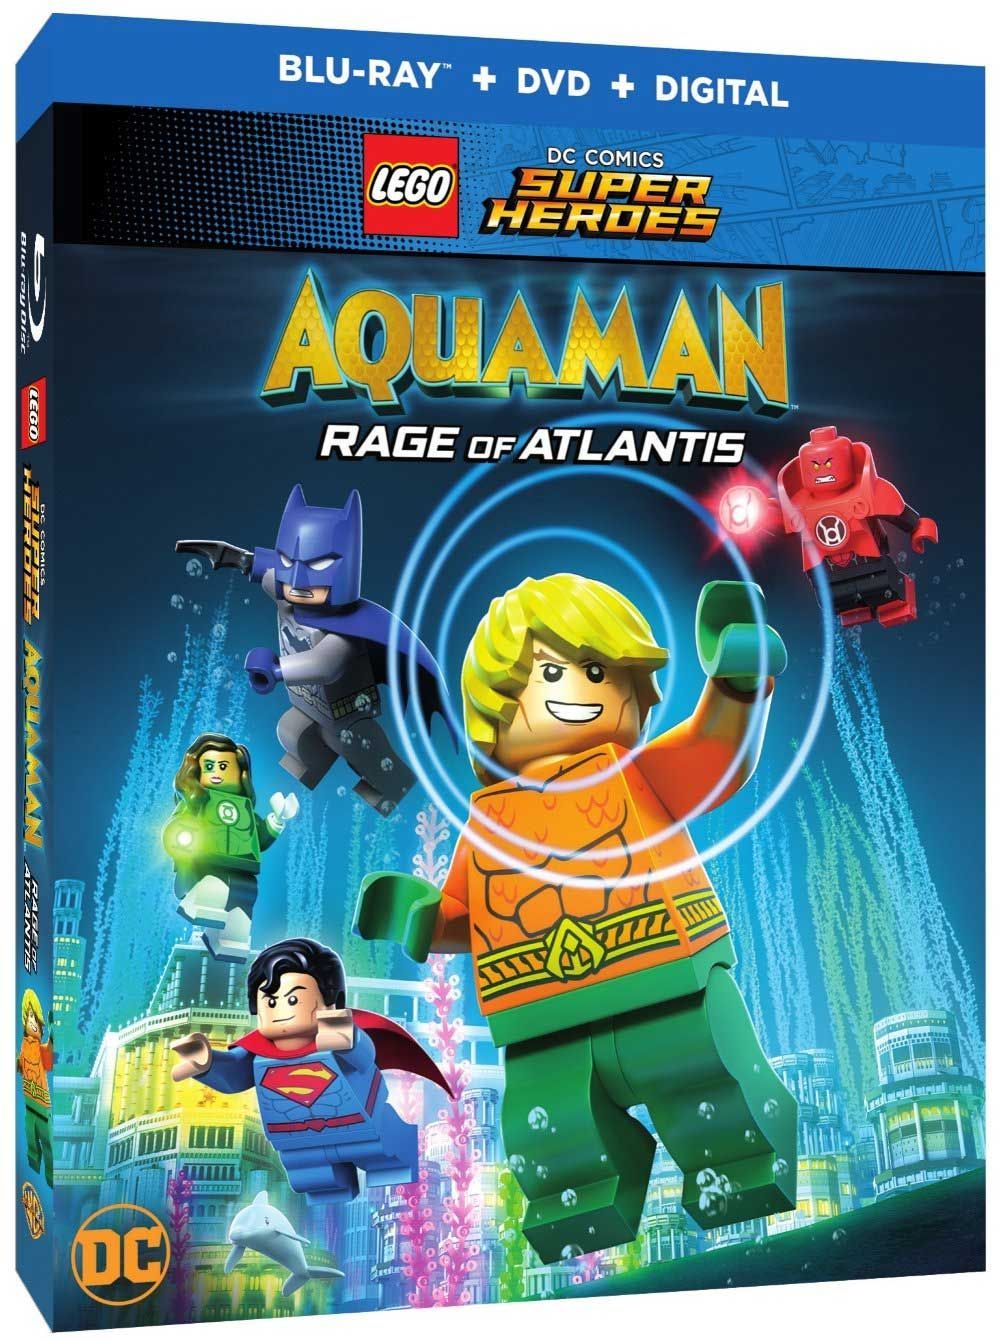 Aquaman aconsegueix la seva pròpia funció animada LEGO, Rage of Atlantis